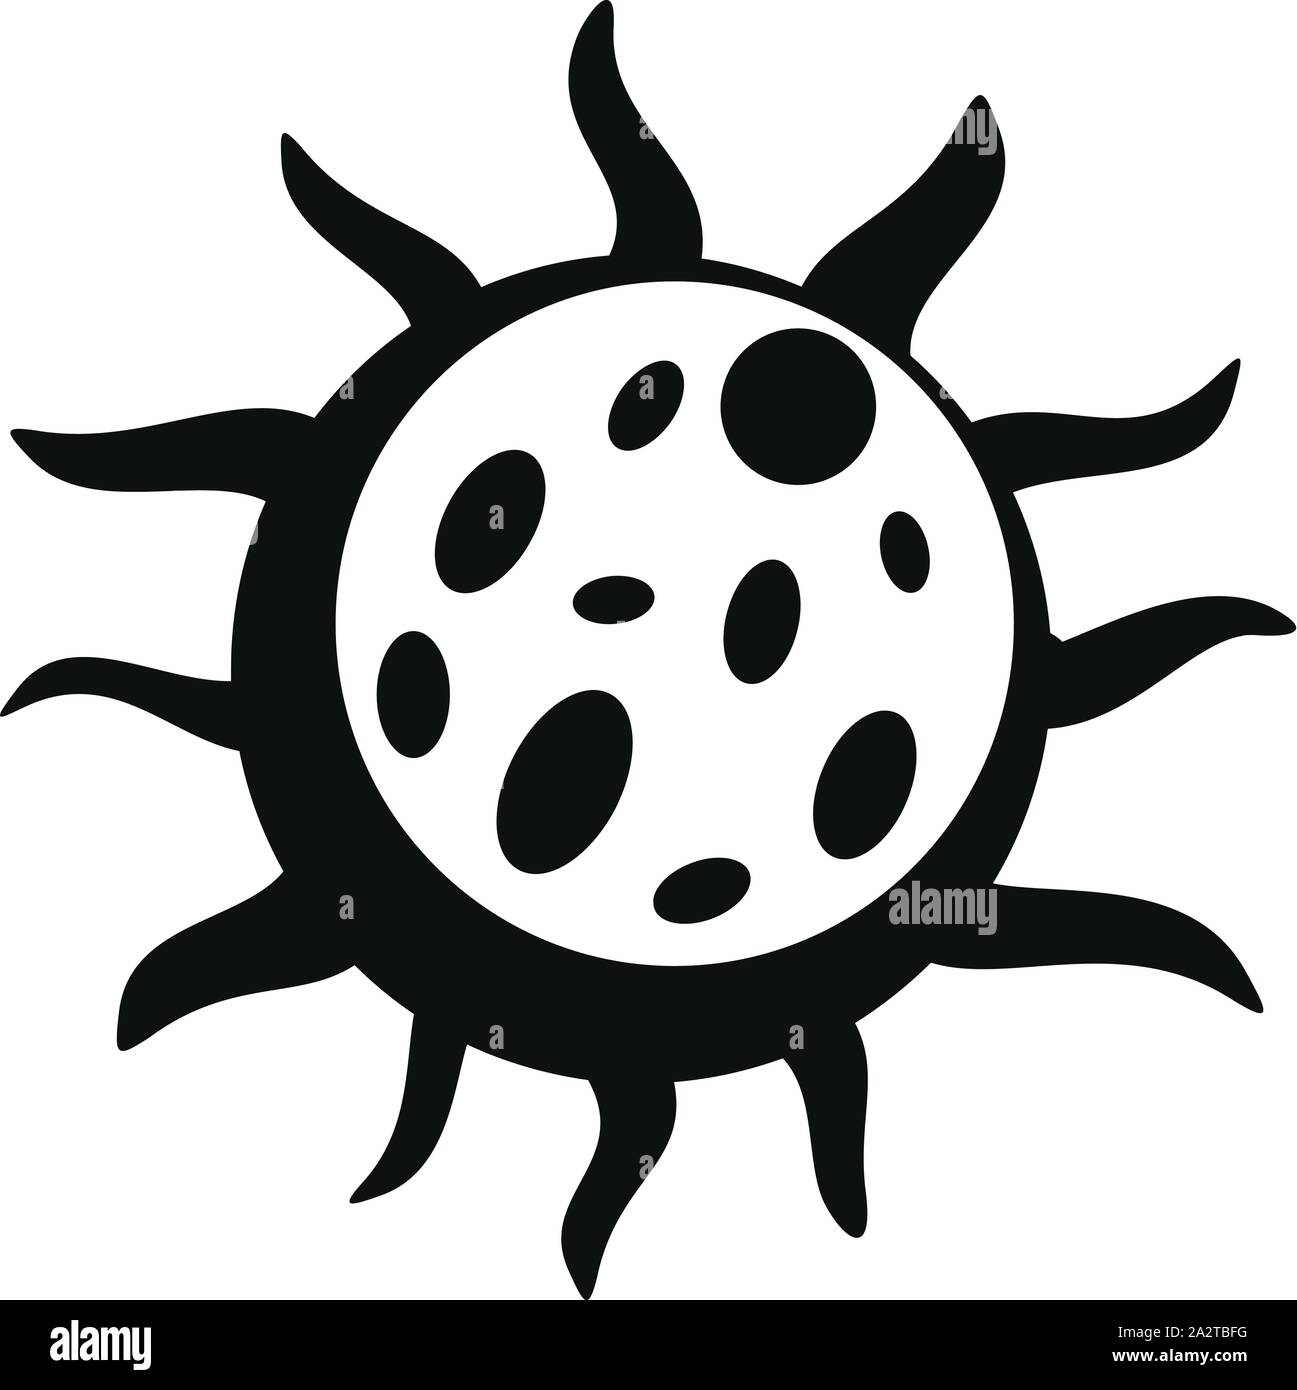 Infektion virus Symbol. Einfache Abbildung der Infektion Virus Vektor Symbol für Web Design auf weißem Hintergrund Stock Vektor